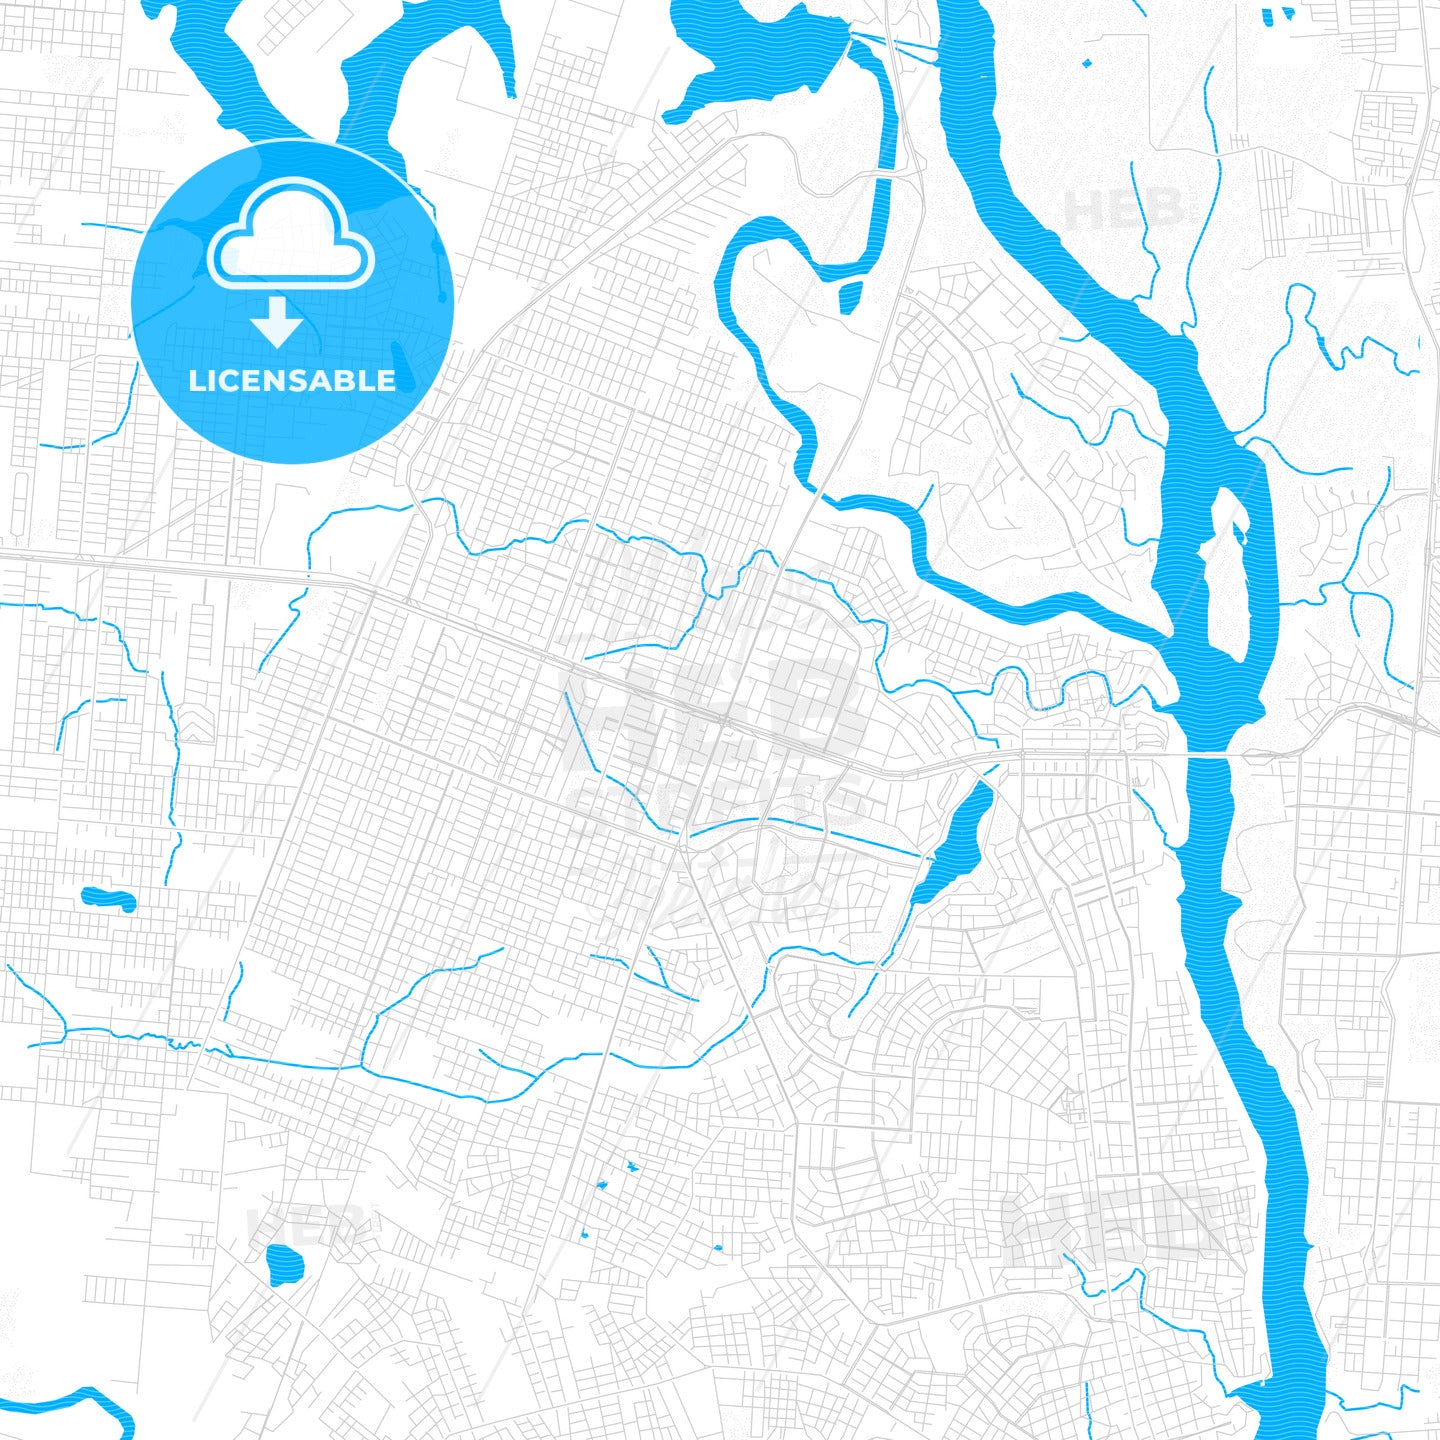 Ciudad del Este, Paraguay PDF vector map with water in focus